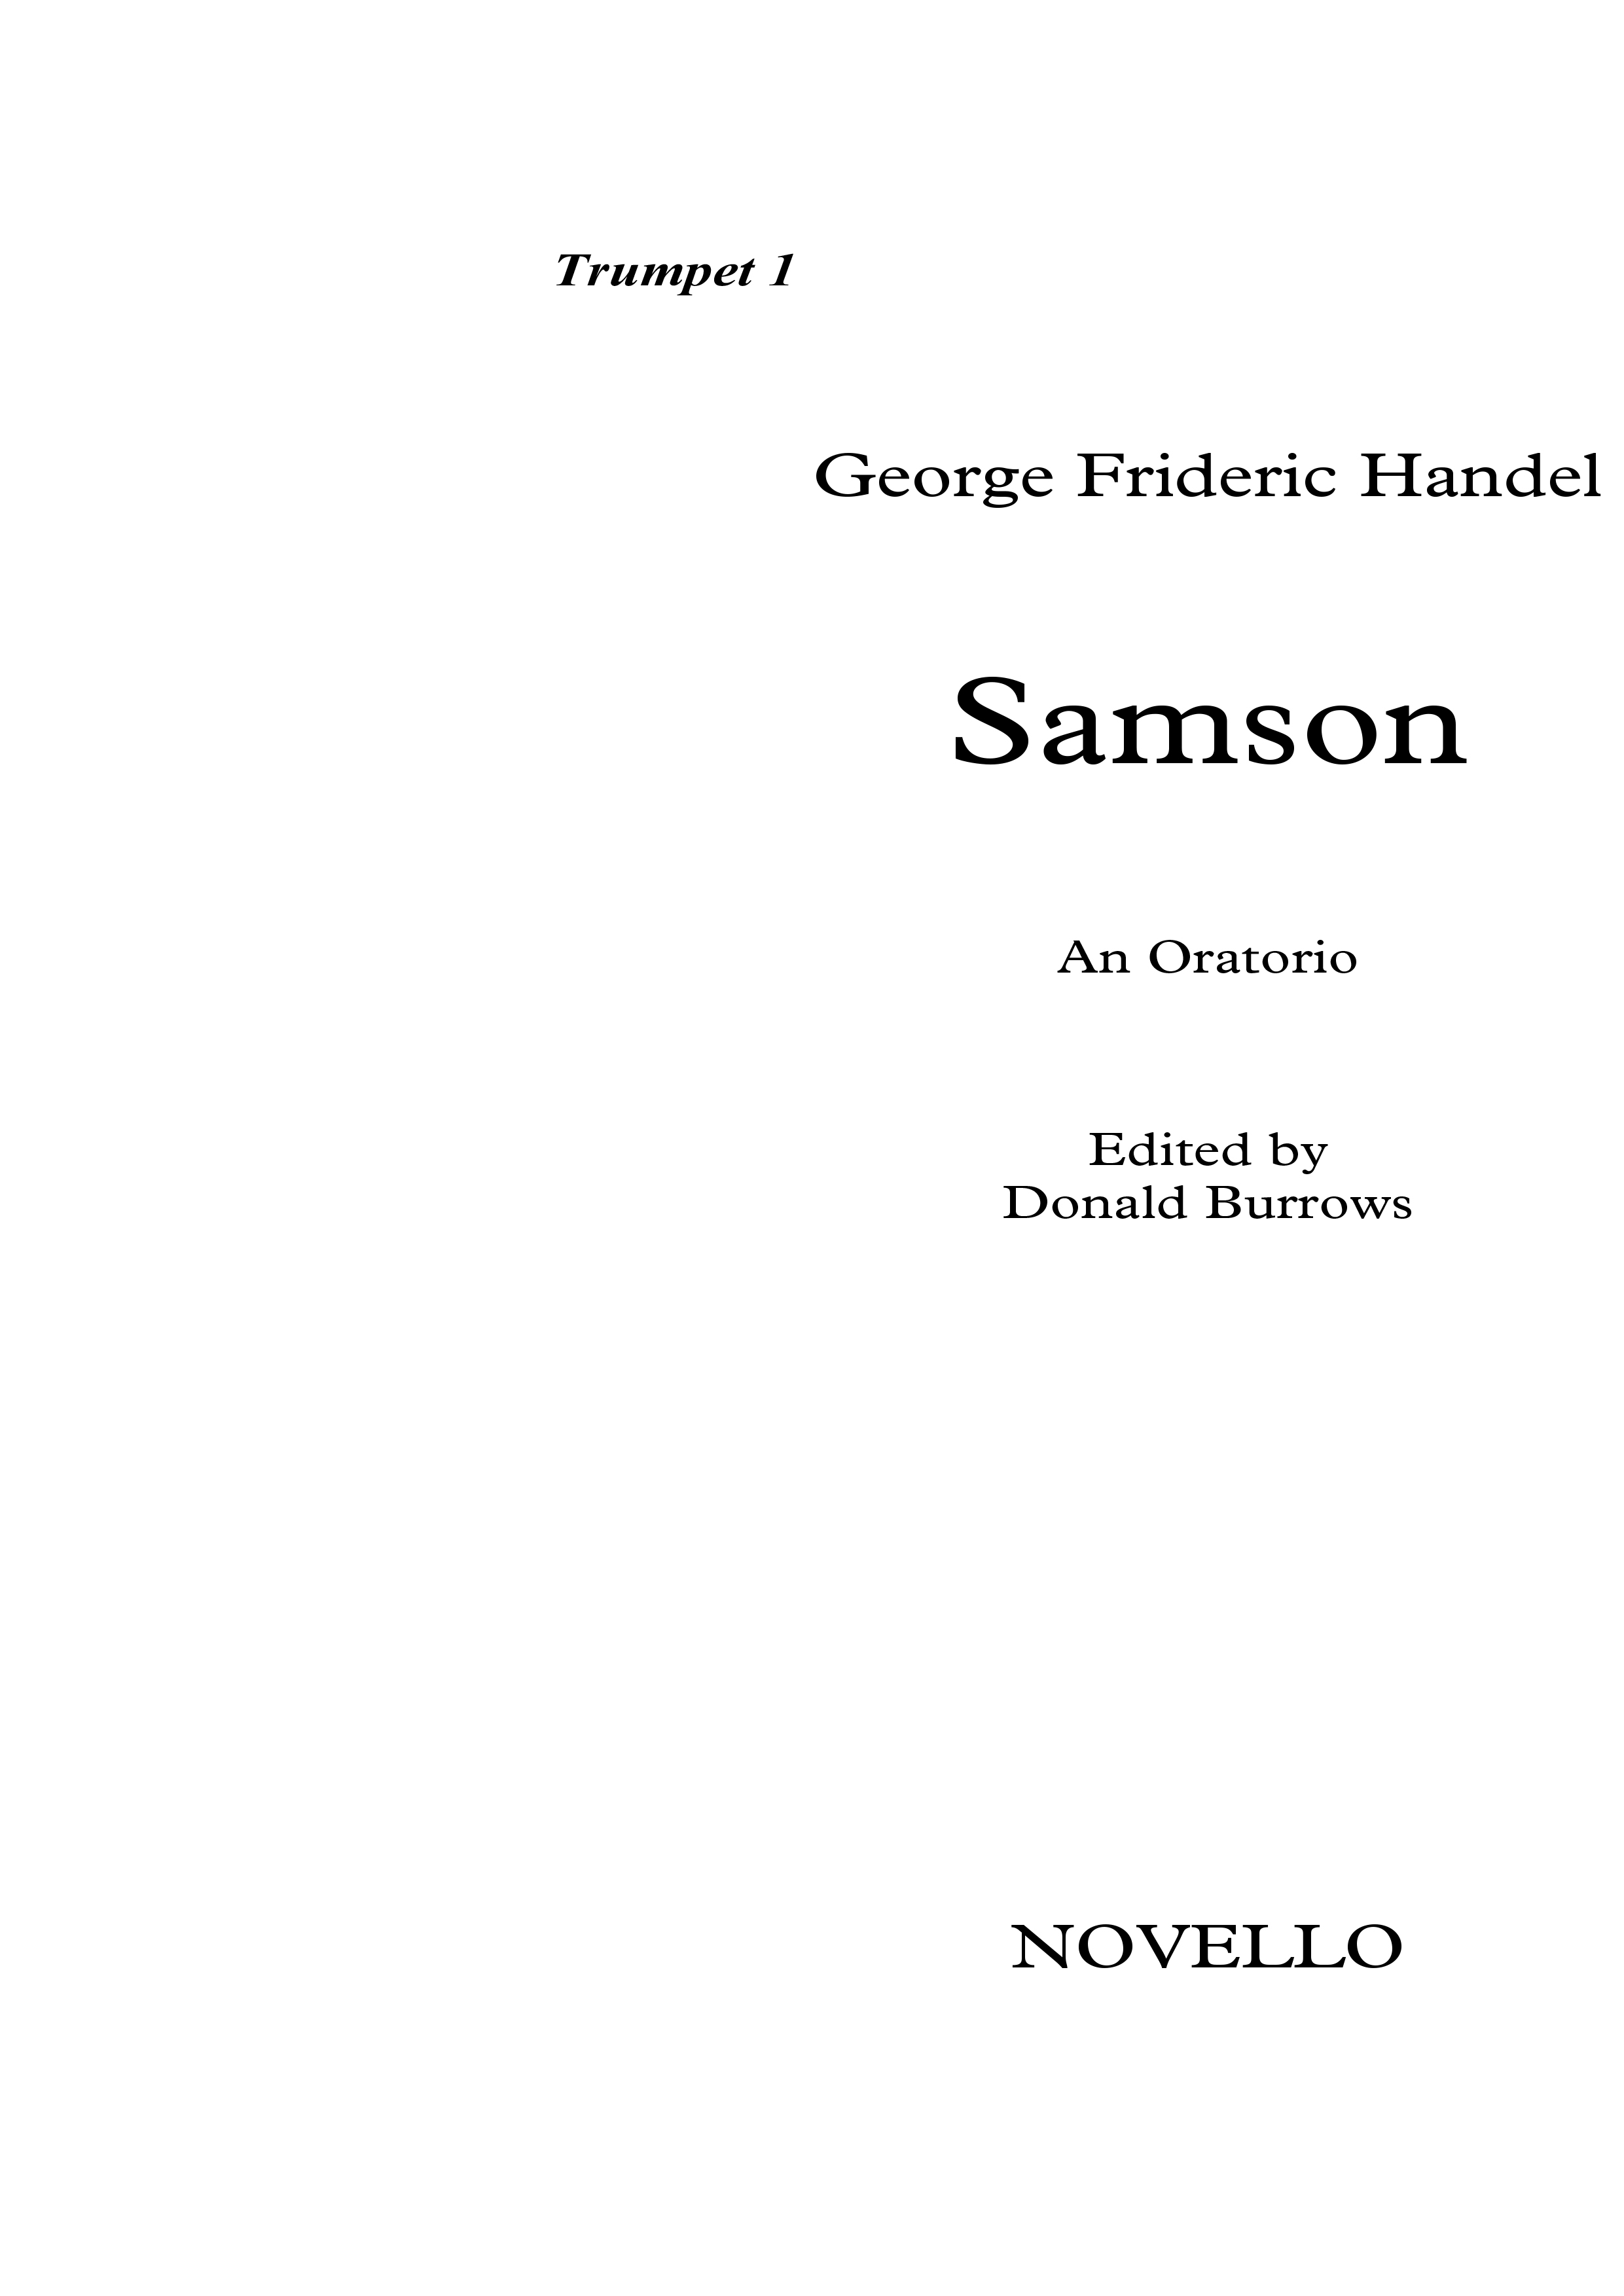 Georg Friedrich Händel: Samson (Trumpet Parts): Opera: Parts